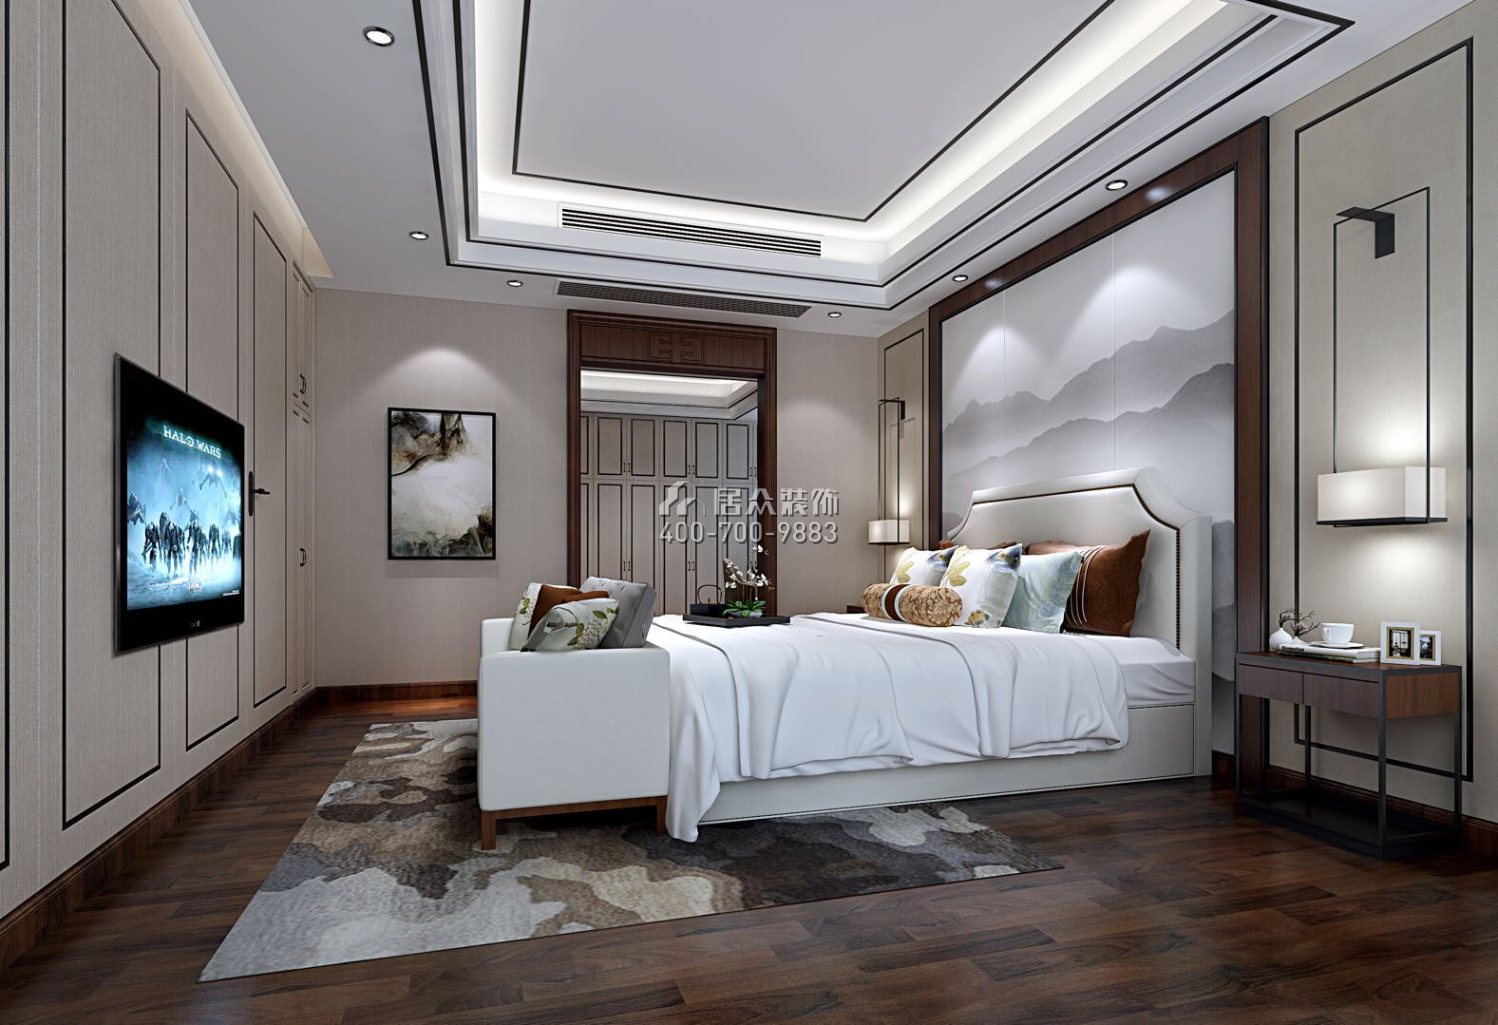 御水豪庭260平方米中式風格復式戶型臥室裝修效果圖